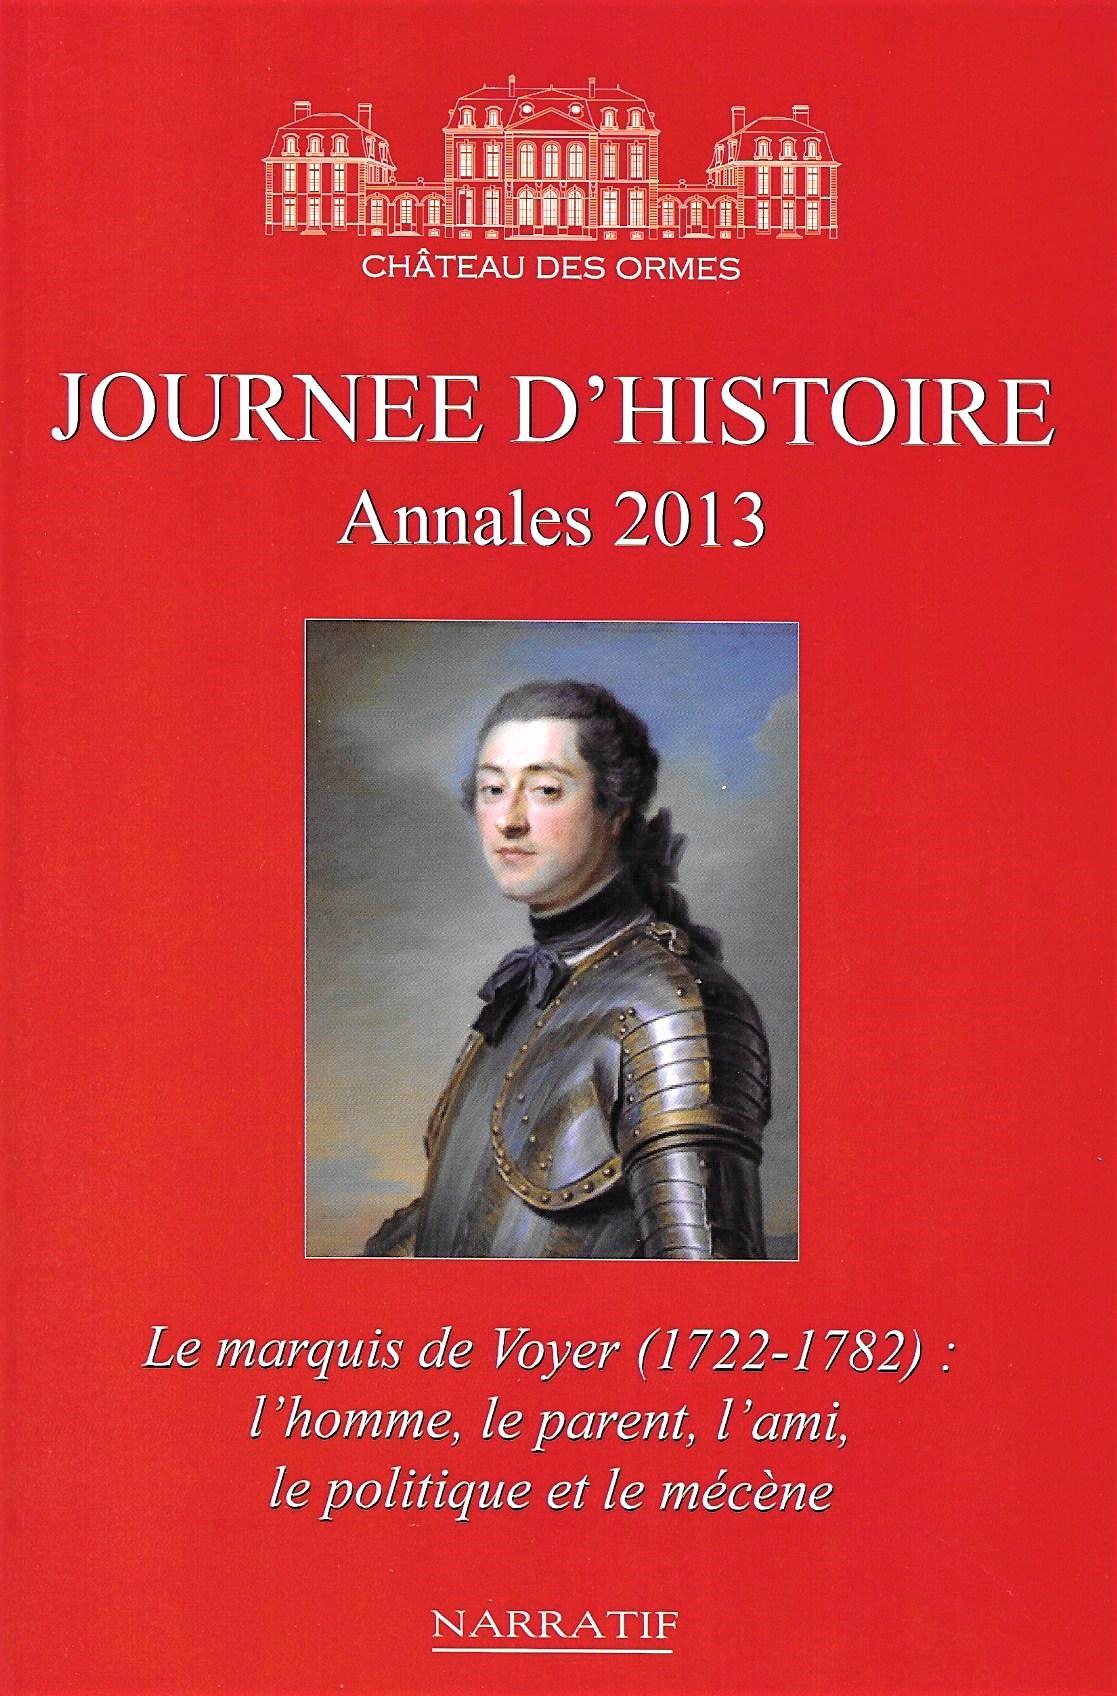 Journées d'histoire du château des Ormes, annales 2013, 2014